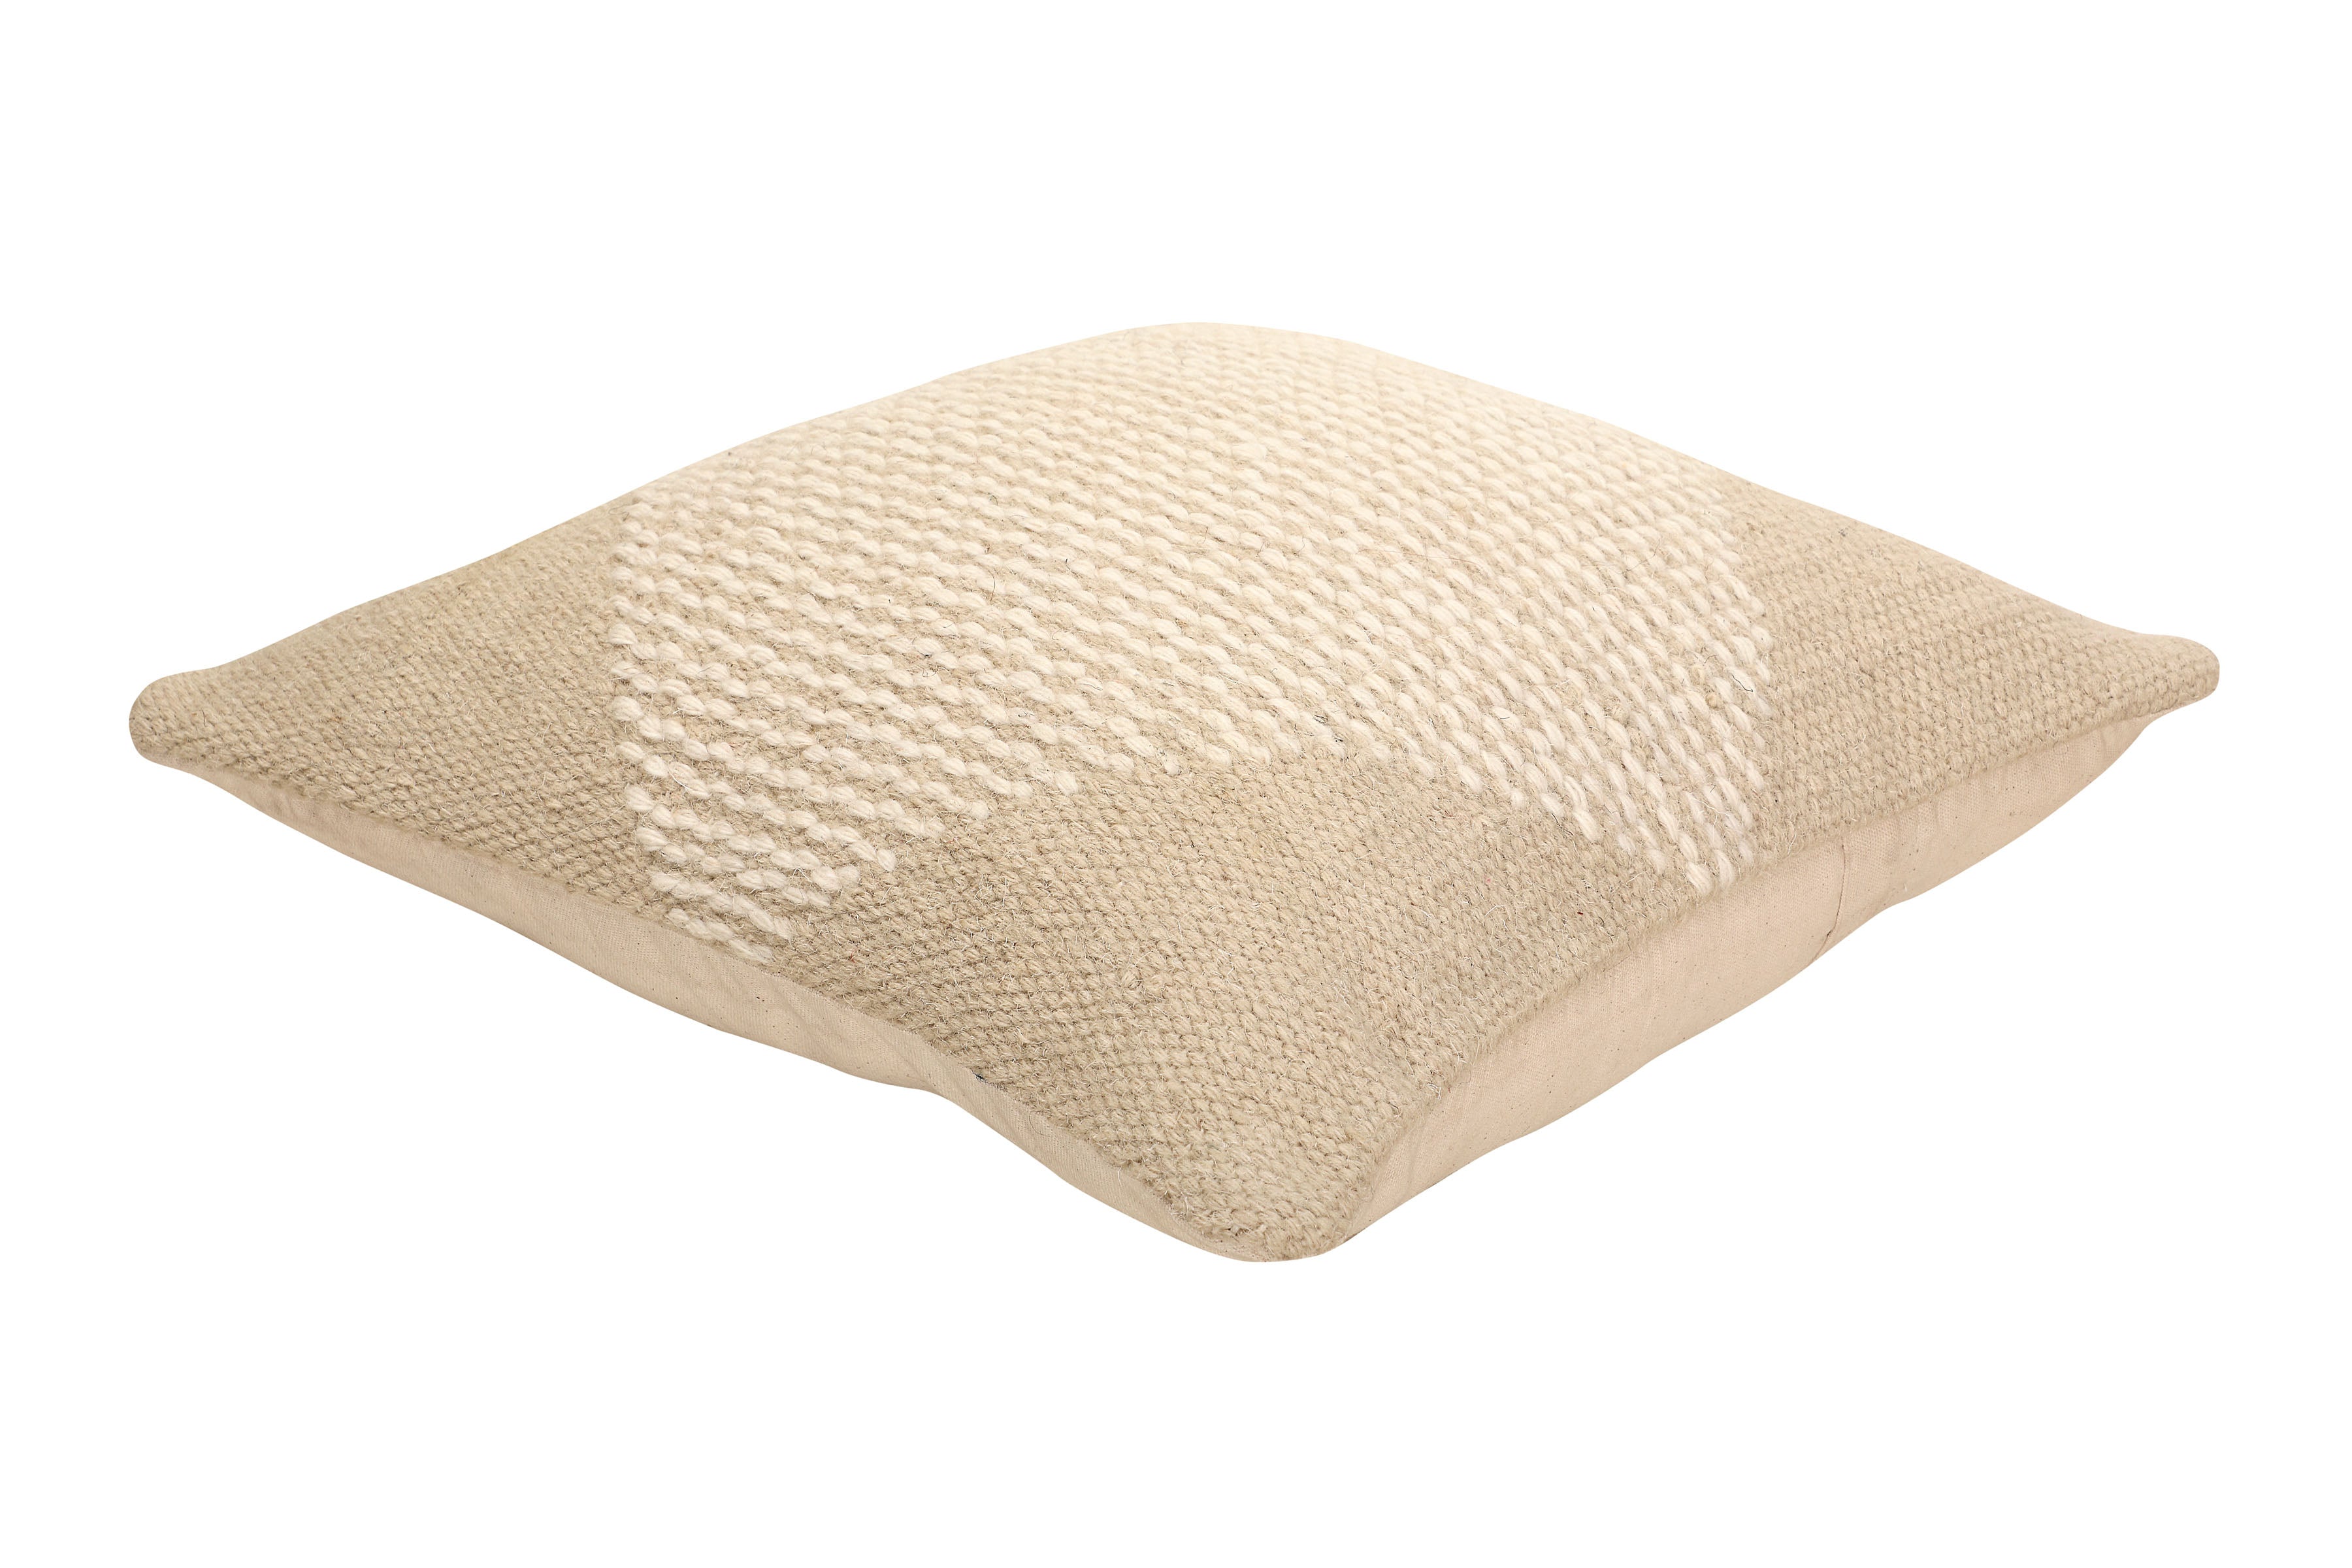 Diagonal Stripe Wool Pillow - Biscotti - 18x18 Inch